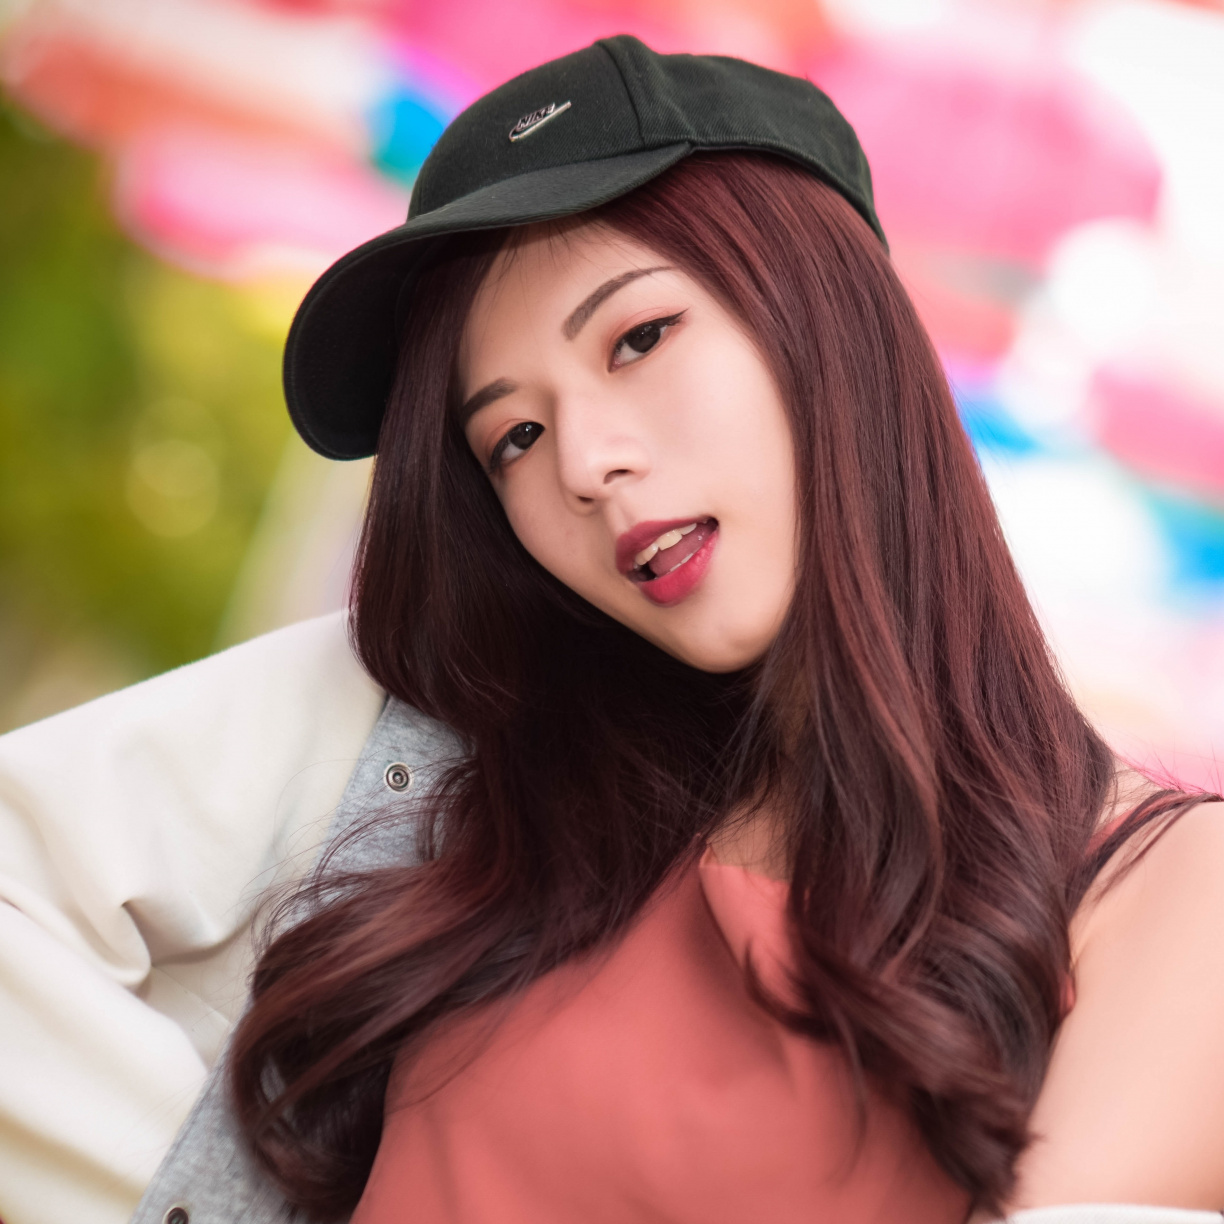 Beautiful, Baseball Cap, Asian Woman, Wallpaper - HD Wallpaper 